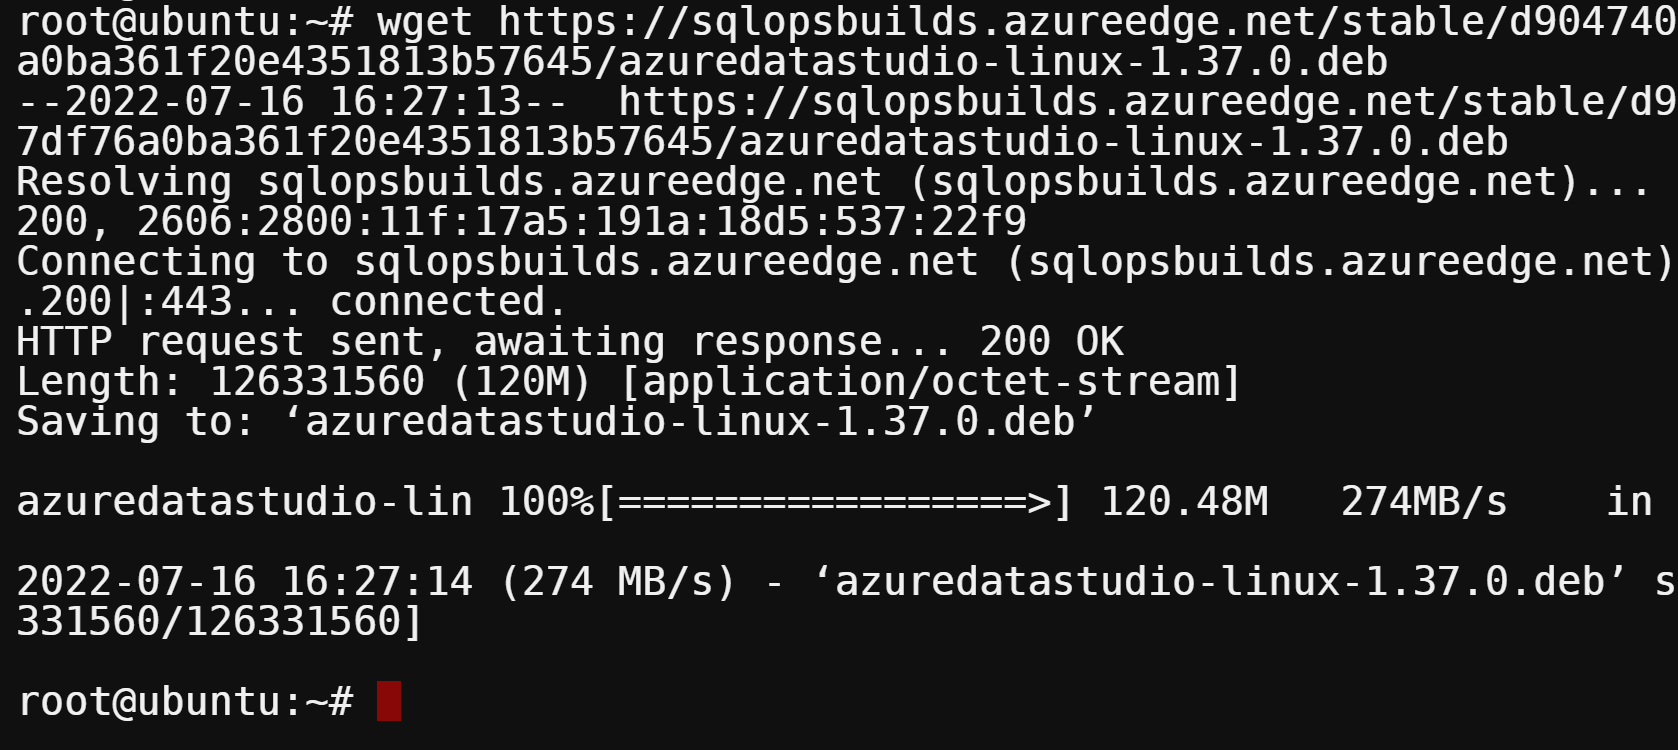 Downloading Azure Dat Storage’s .deb file